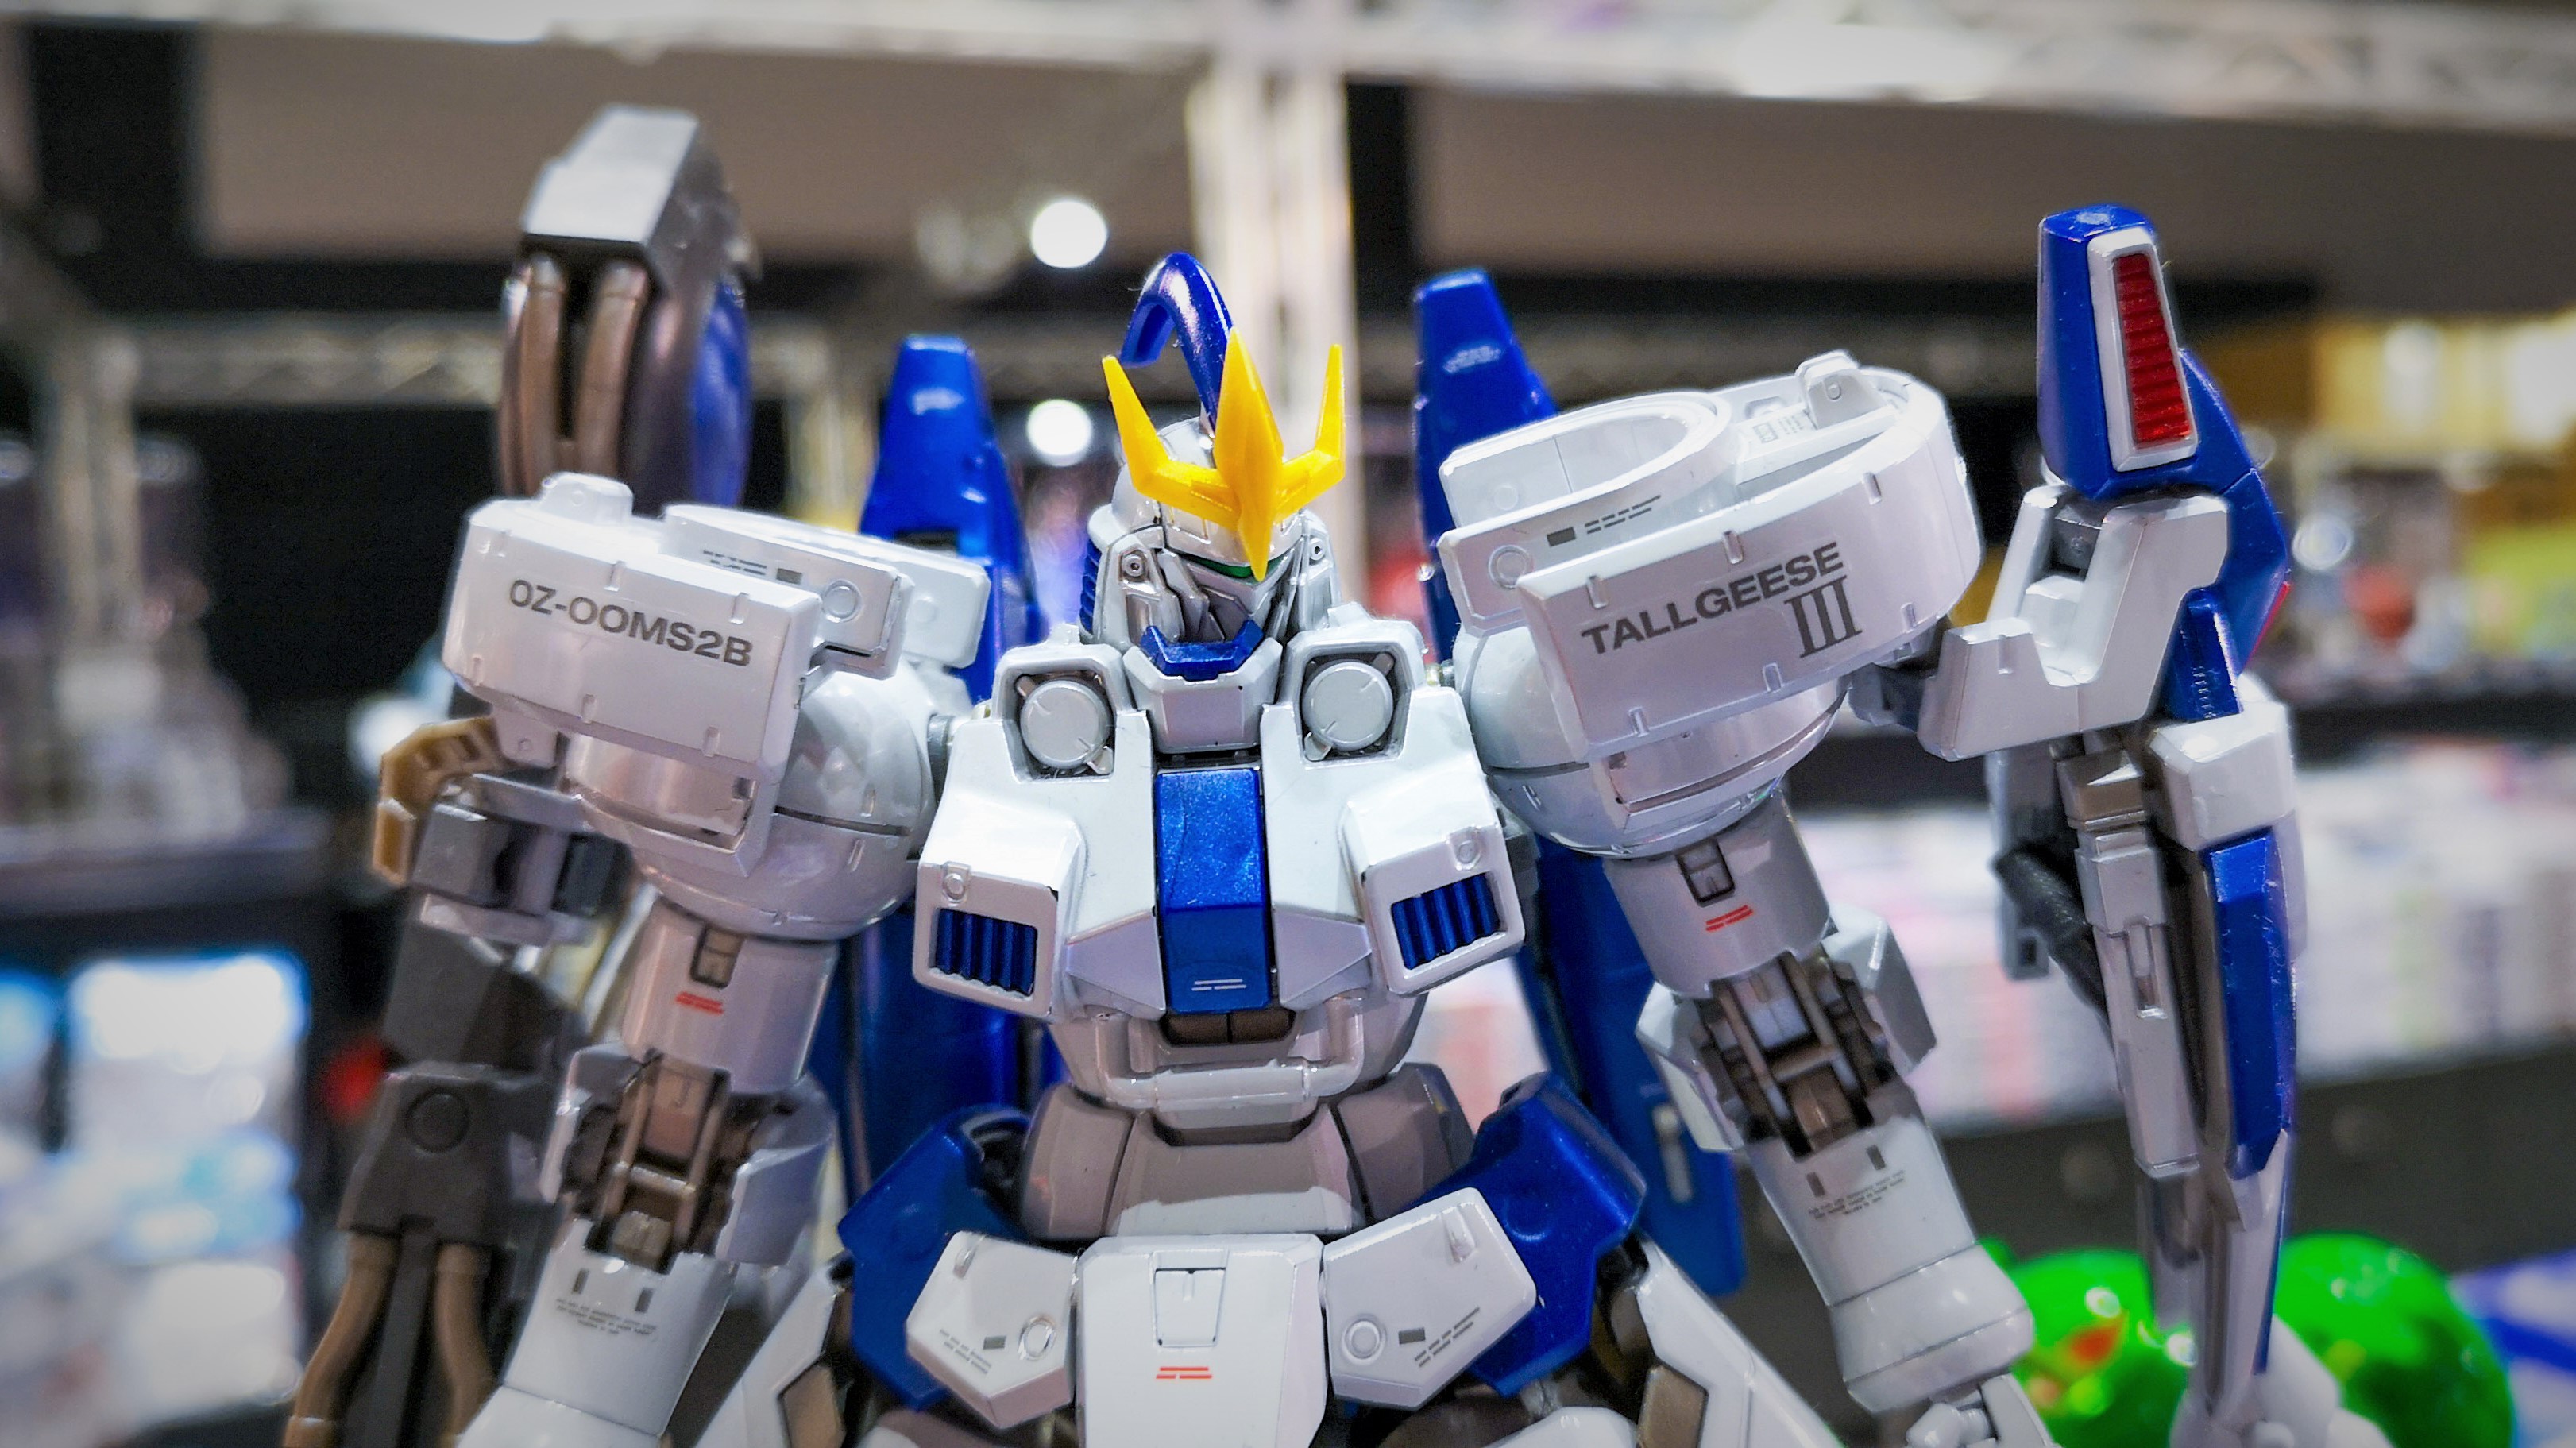 The Gundam Base 限定商品ピックアップ Mg 1 100 トールギスiii スペシャルコーティング 塗装をしなくてもこのクオリティ ホワイト部分がホワイトメッキとなり 実にエレガントな商品となっております 更にmgトールギスも同じコーティングでご